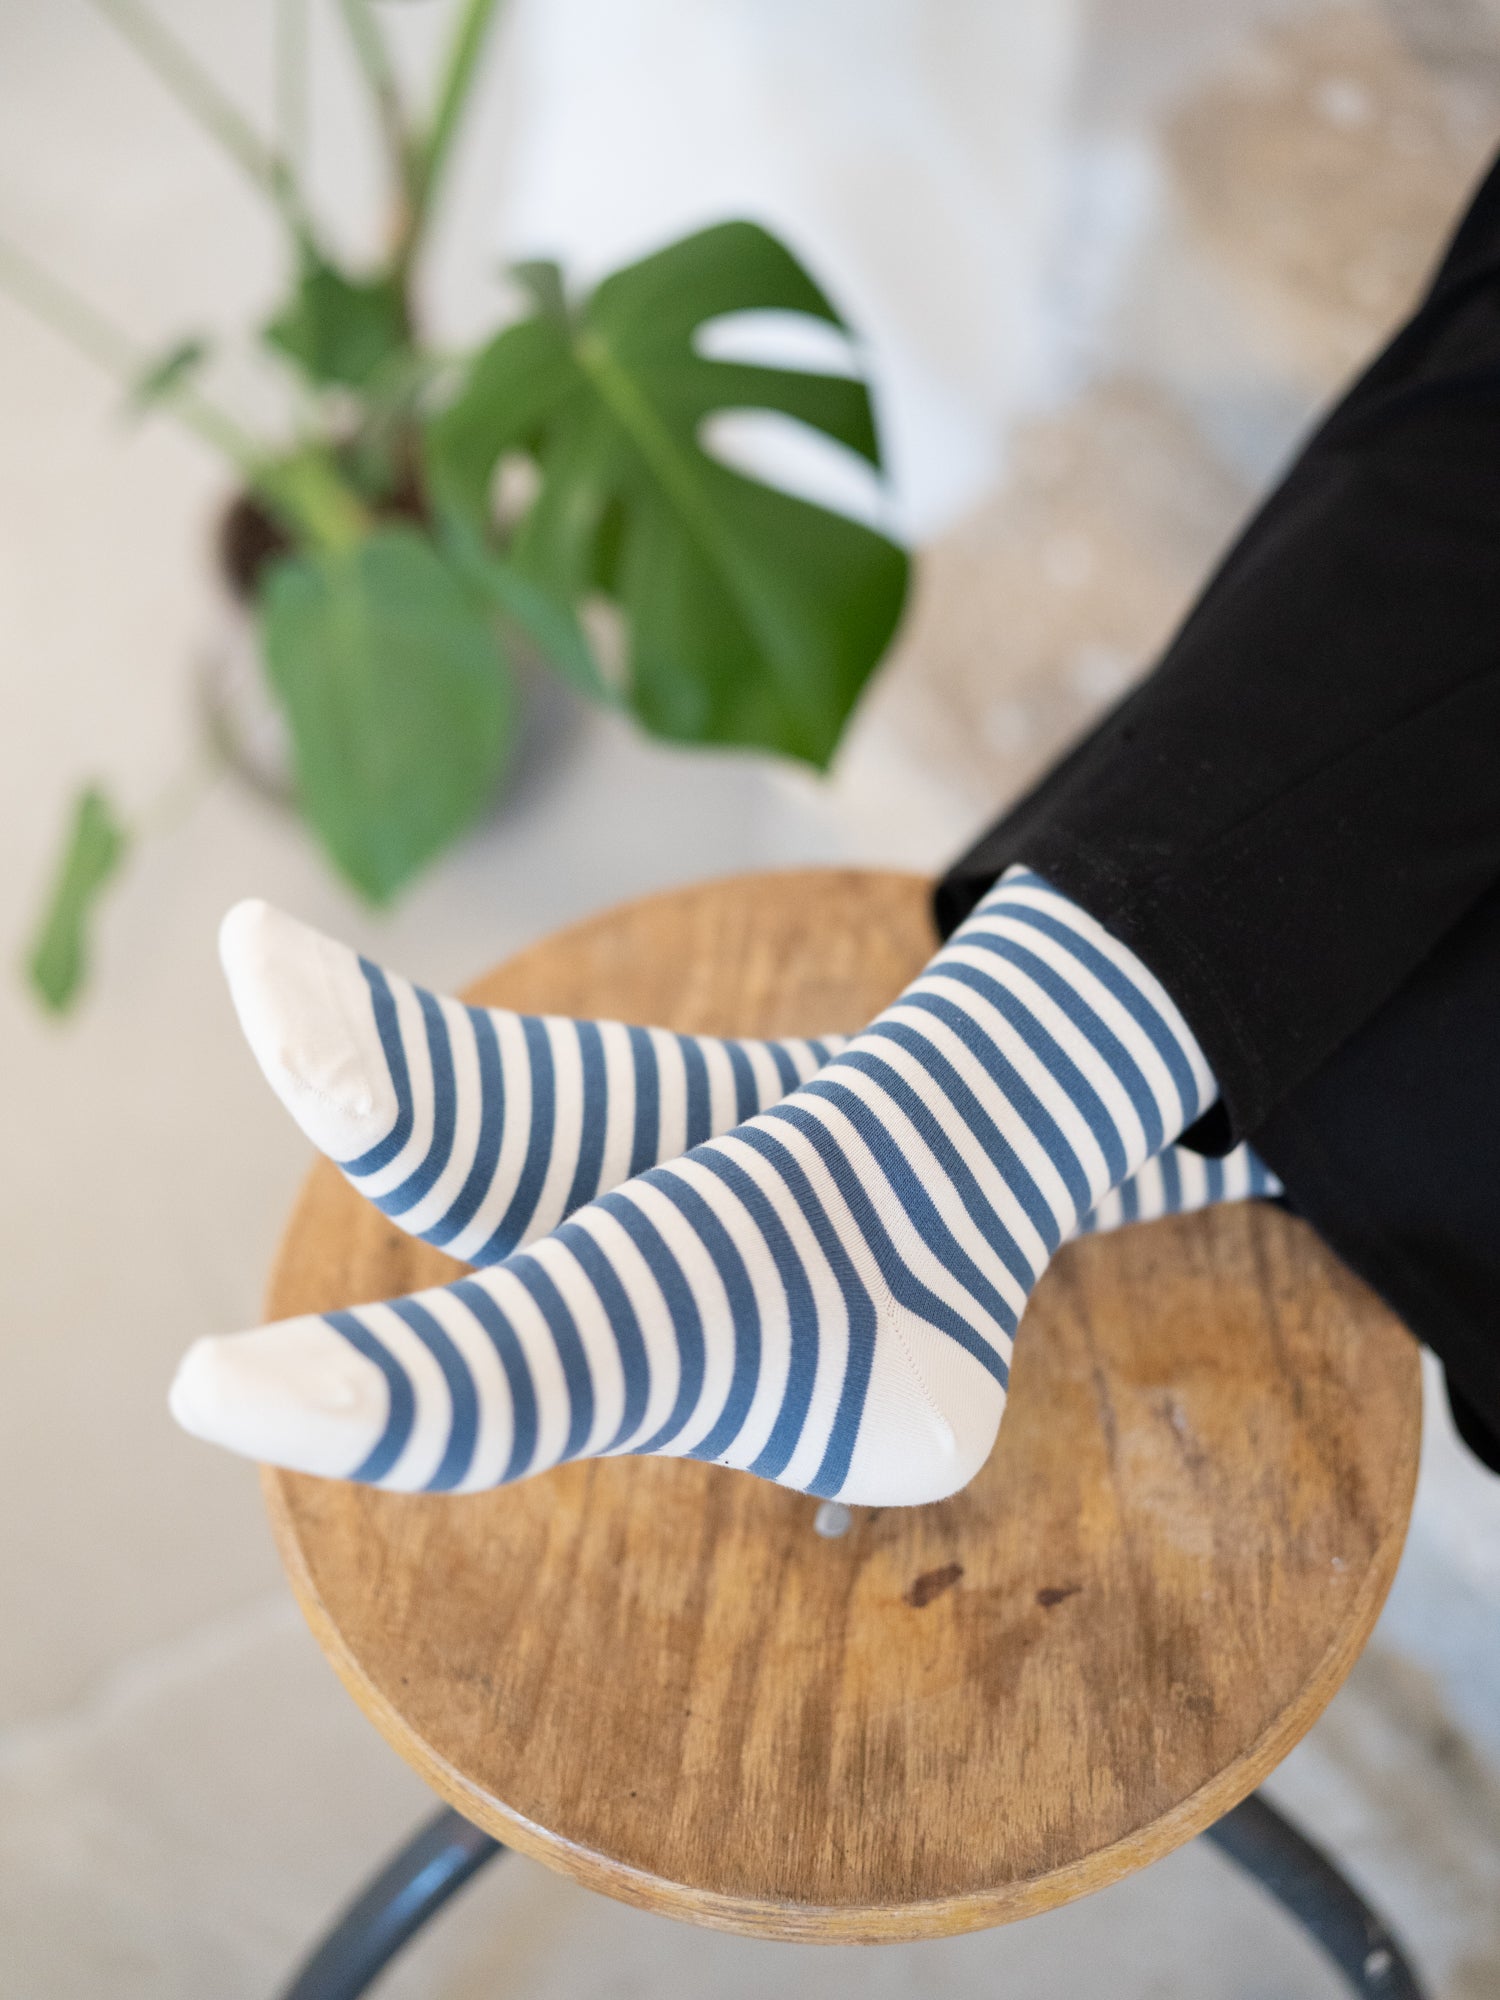 Nachhaltige Fair Fashion Unisex Socken von FUXBAU in cremeweiss blau gestreift aus 100% Biobaumwolle.